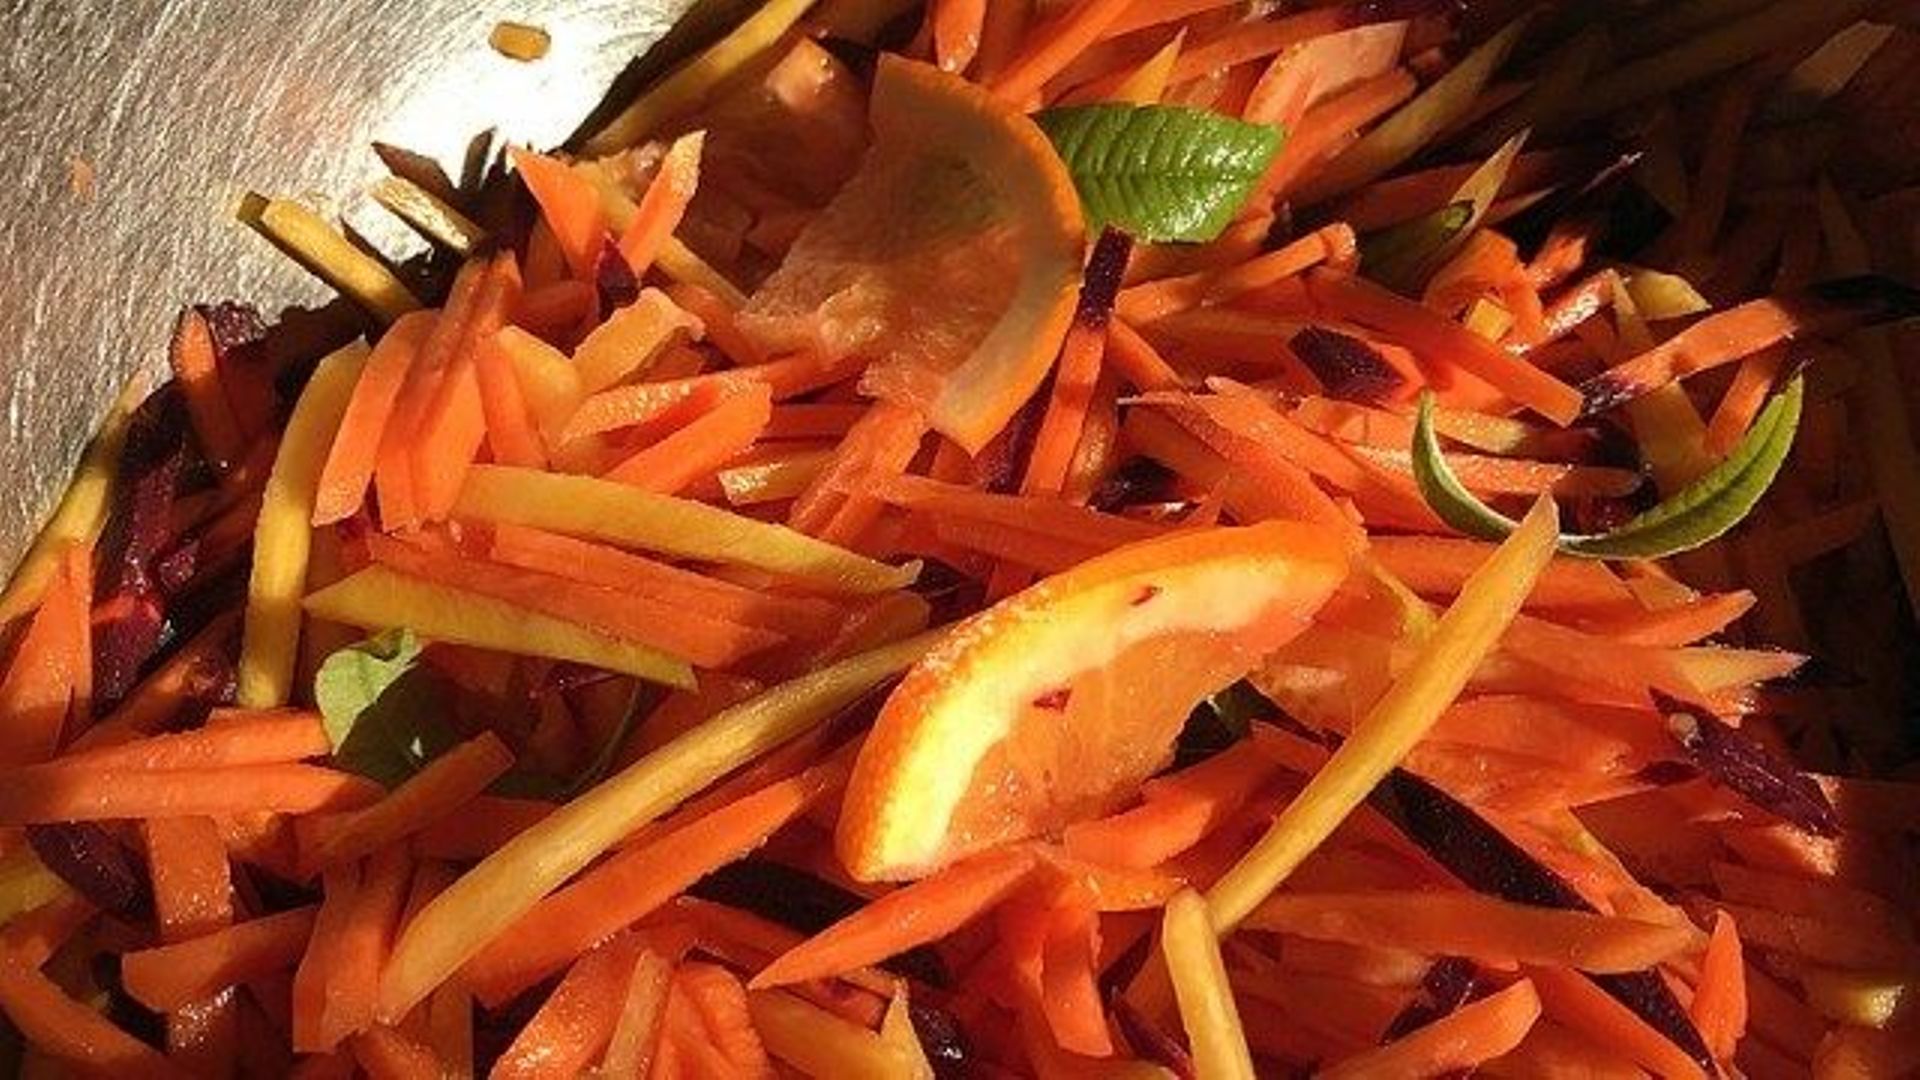 Des carottes en mode lacto-fermentation ! On remplit les placards ?